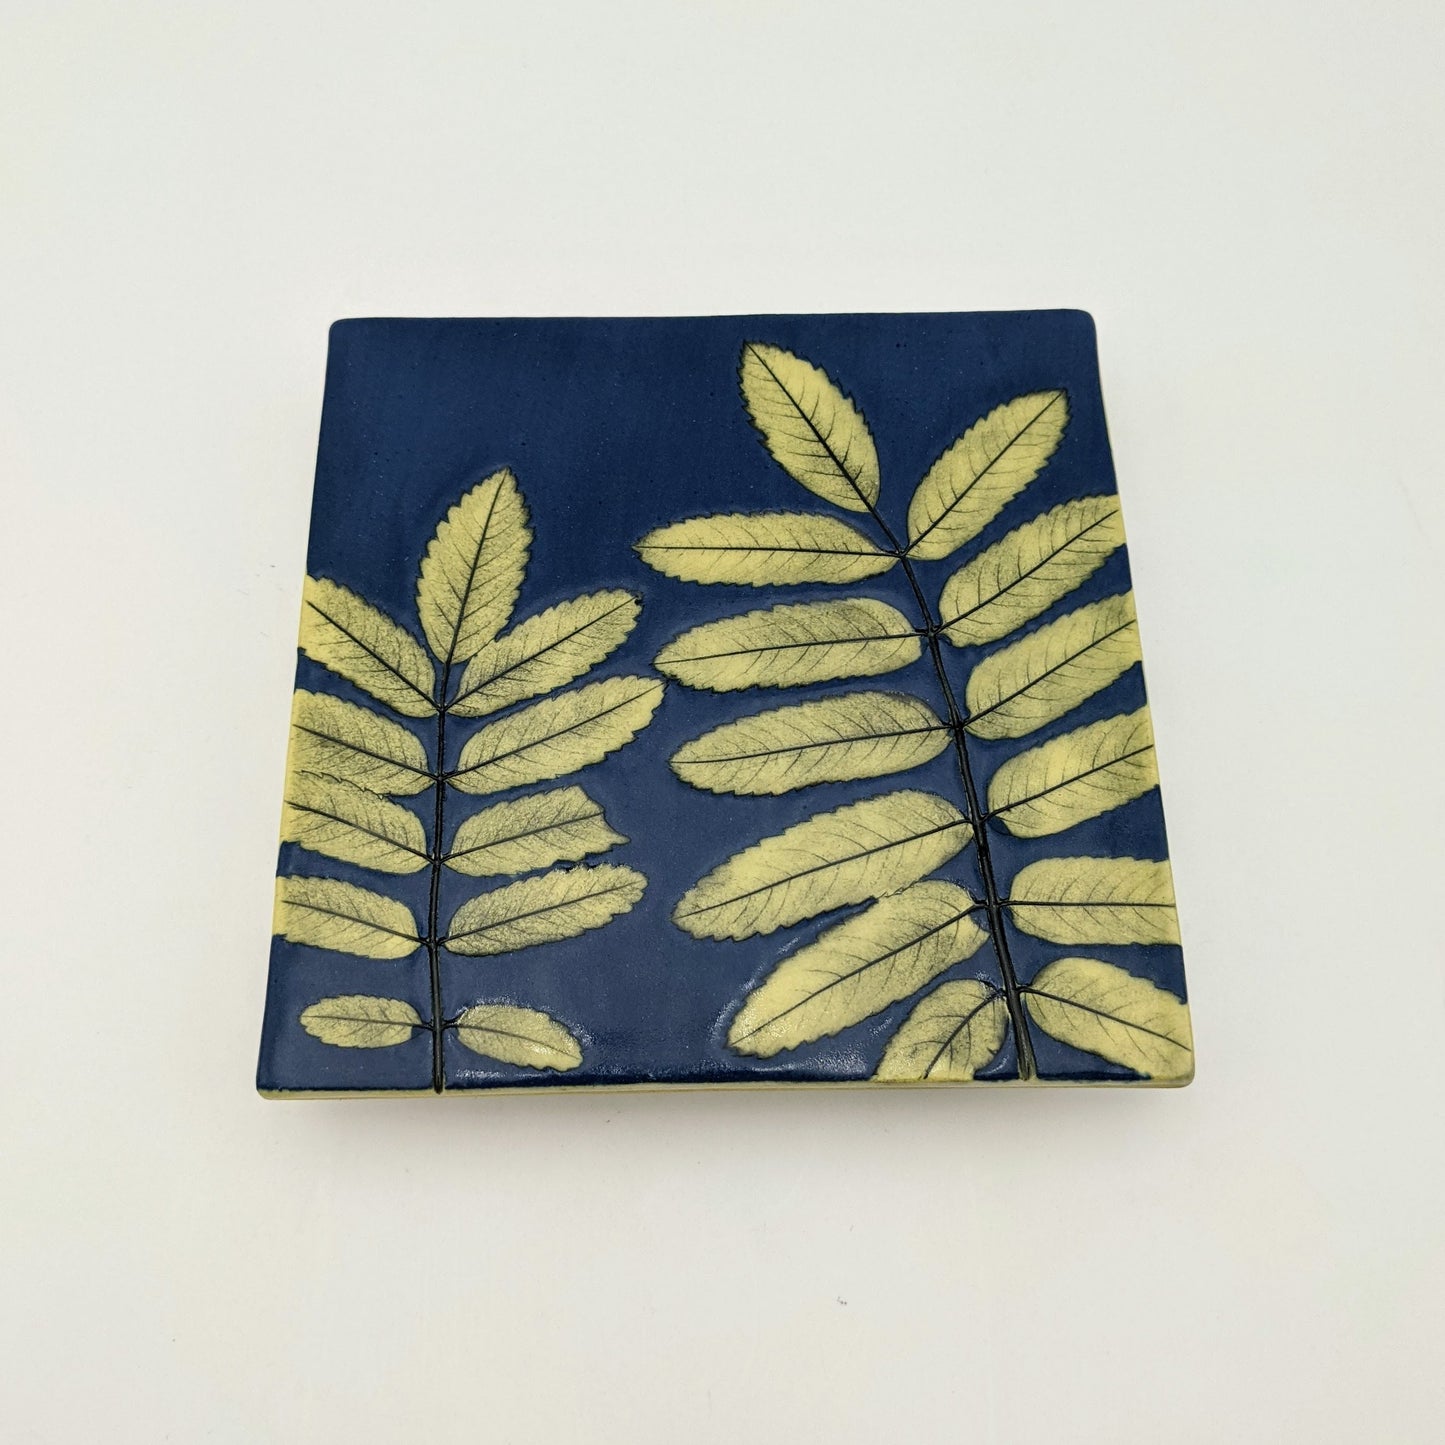 Slip Leaf Tile 5 x 5 - Dr. Blue with Green Fern Leaf